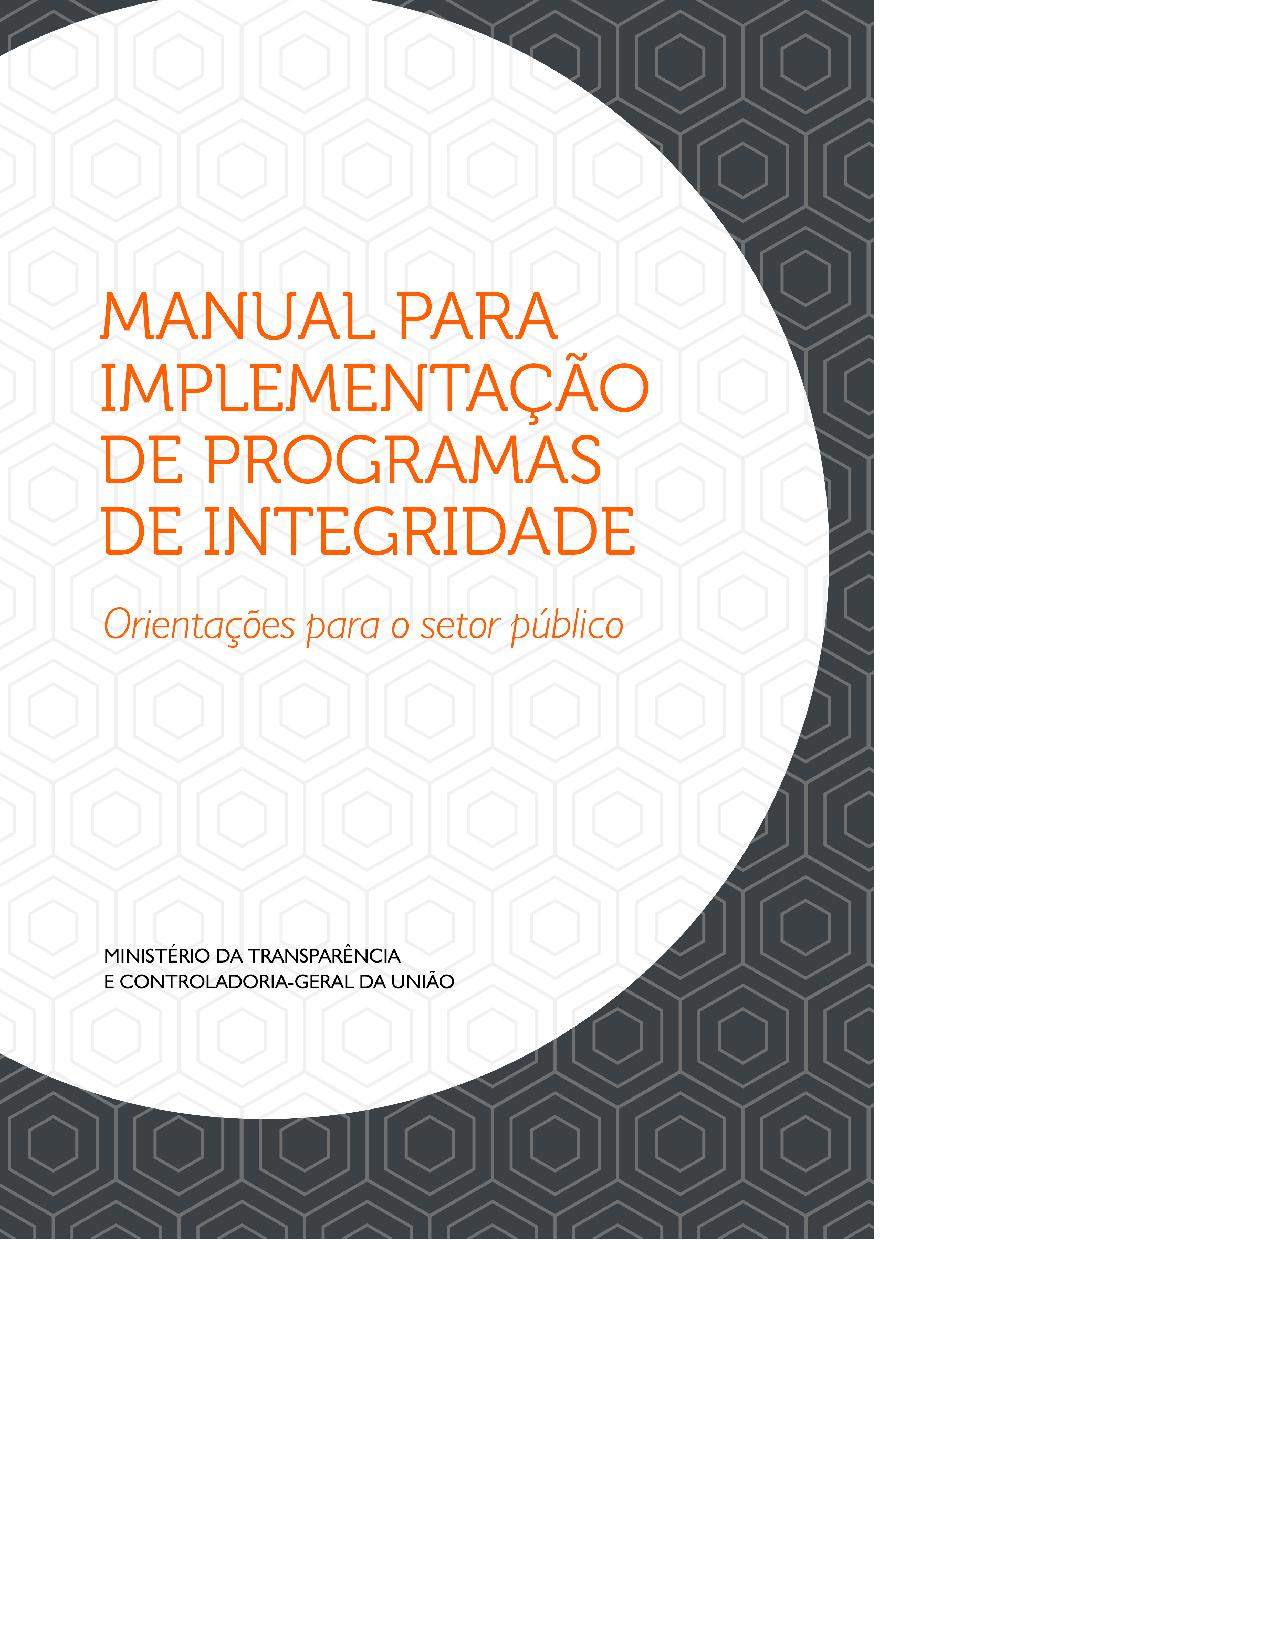 Manual Para Implementação do Programa de Integridade